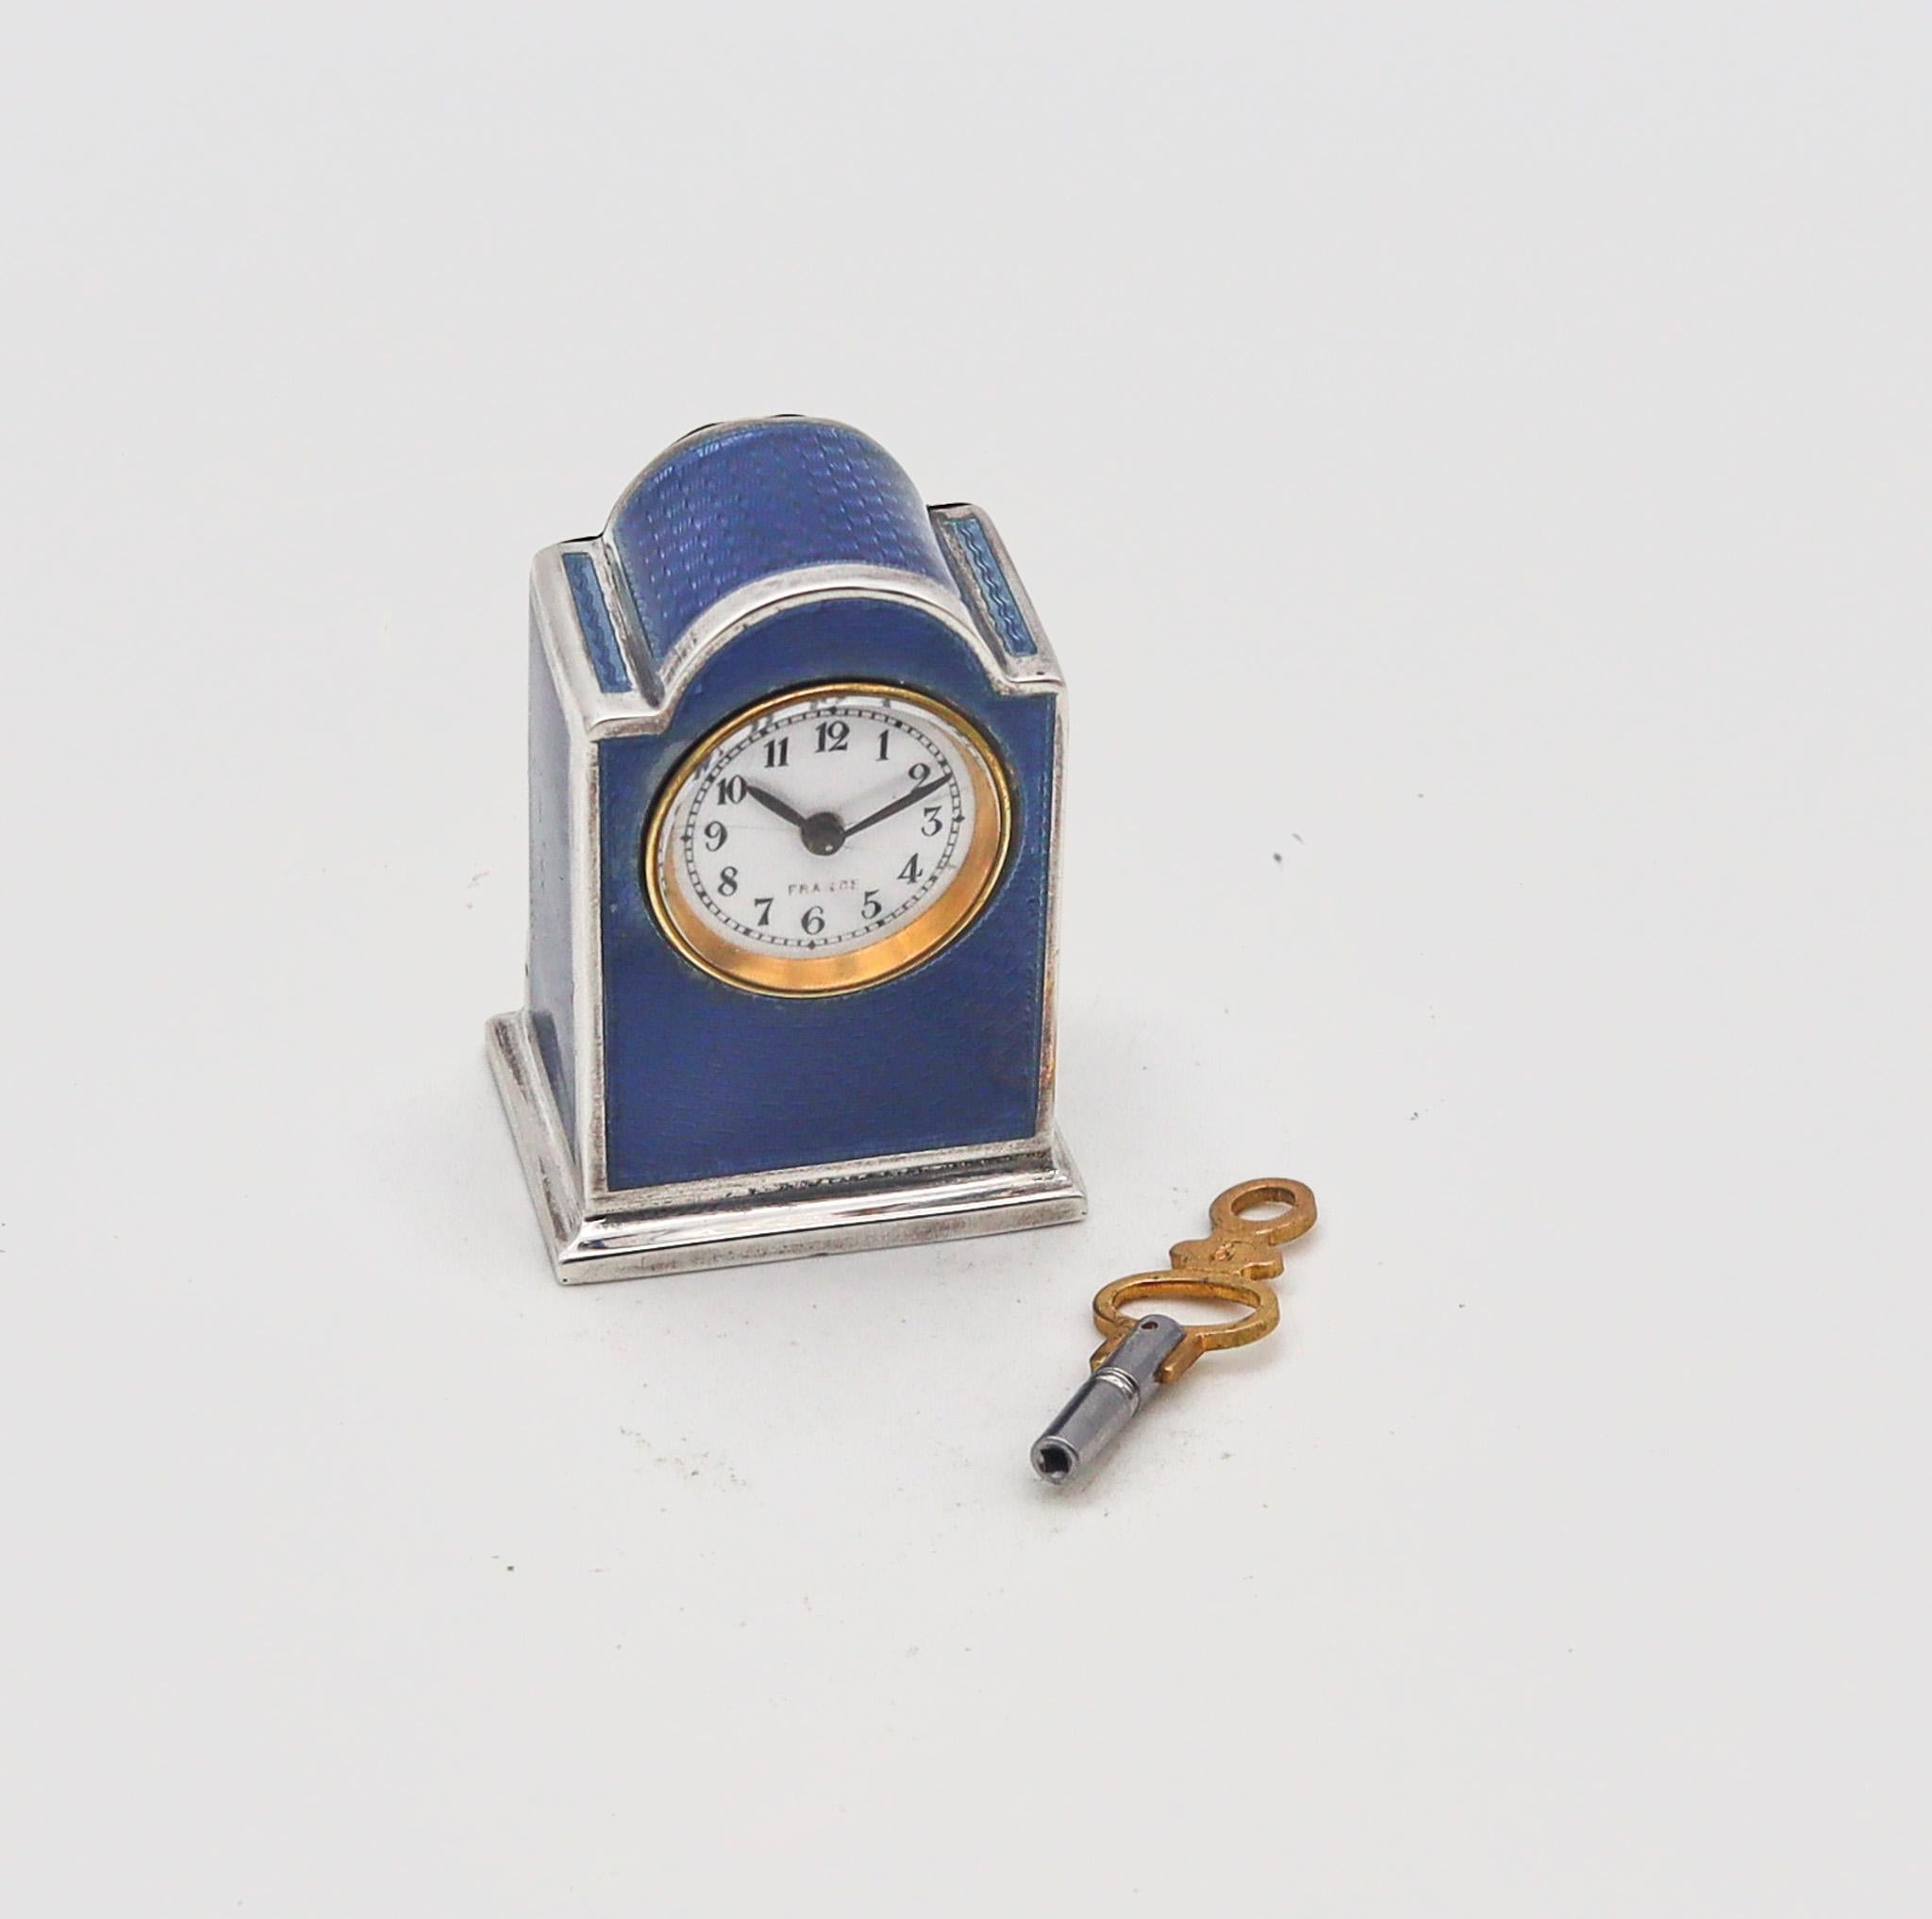 Eine Miniatur-Reiseuhr, entworfen von R. Vachet Paris.

Außergewöhnliche und sehr seltene Miniatur-Karrenuhr, hergestellt in Paris Frankreich im Atelier von R. Vachet. Diese fabelhafte kleine antike Uhr wurde während der späten edwardianischen